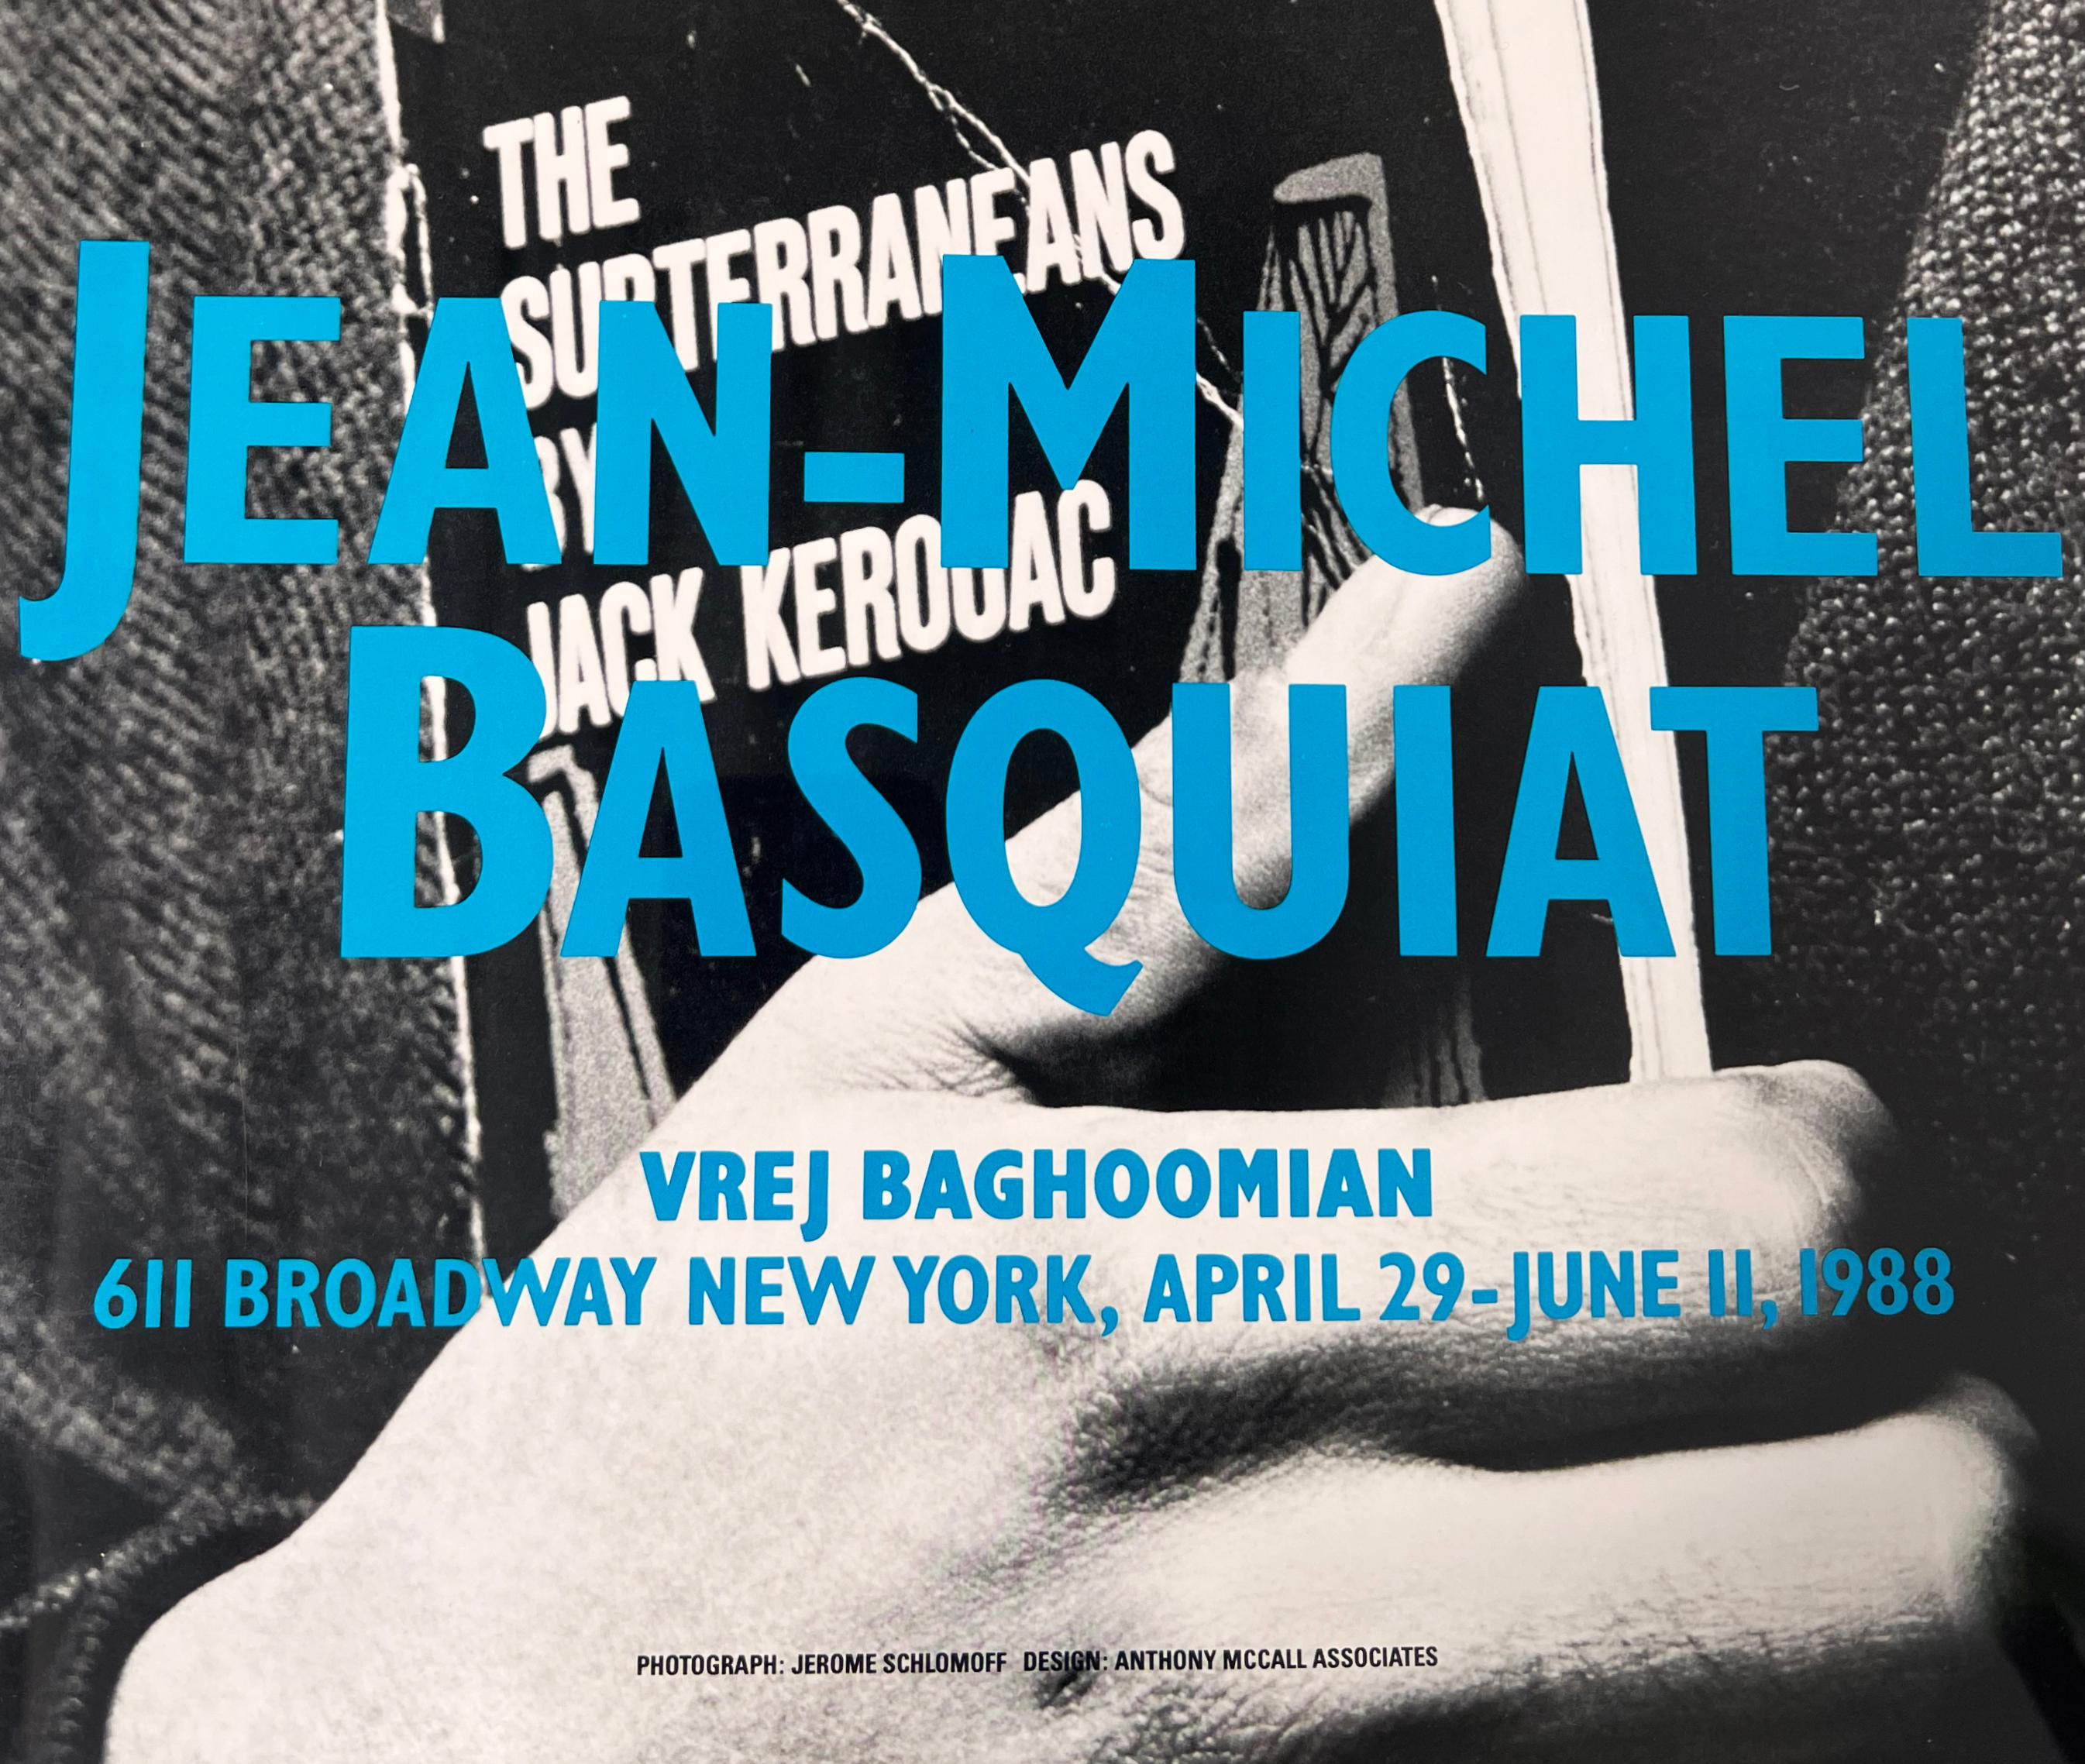 Affiche d'exposition de Jean-Michel Basquiat des années 1980 : Basquiat à la Vrej Baghoomian Gallery, New York : avril - juin 1988 :
L'exposition de Jean-Michel Basquiat à Vrej Baghoomian sera la dernière de l'artiste avant sa mort quelques mois